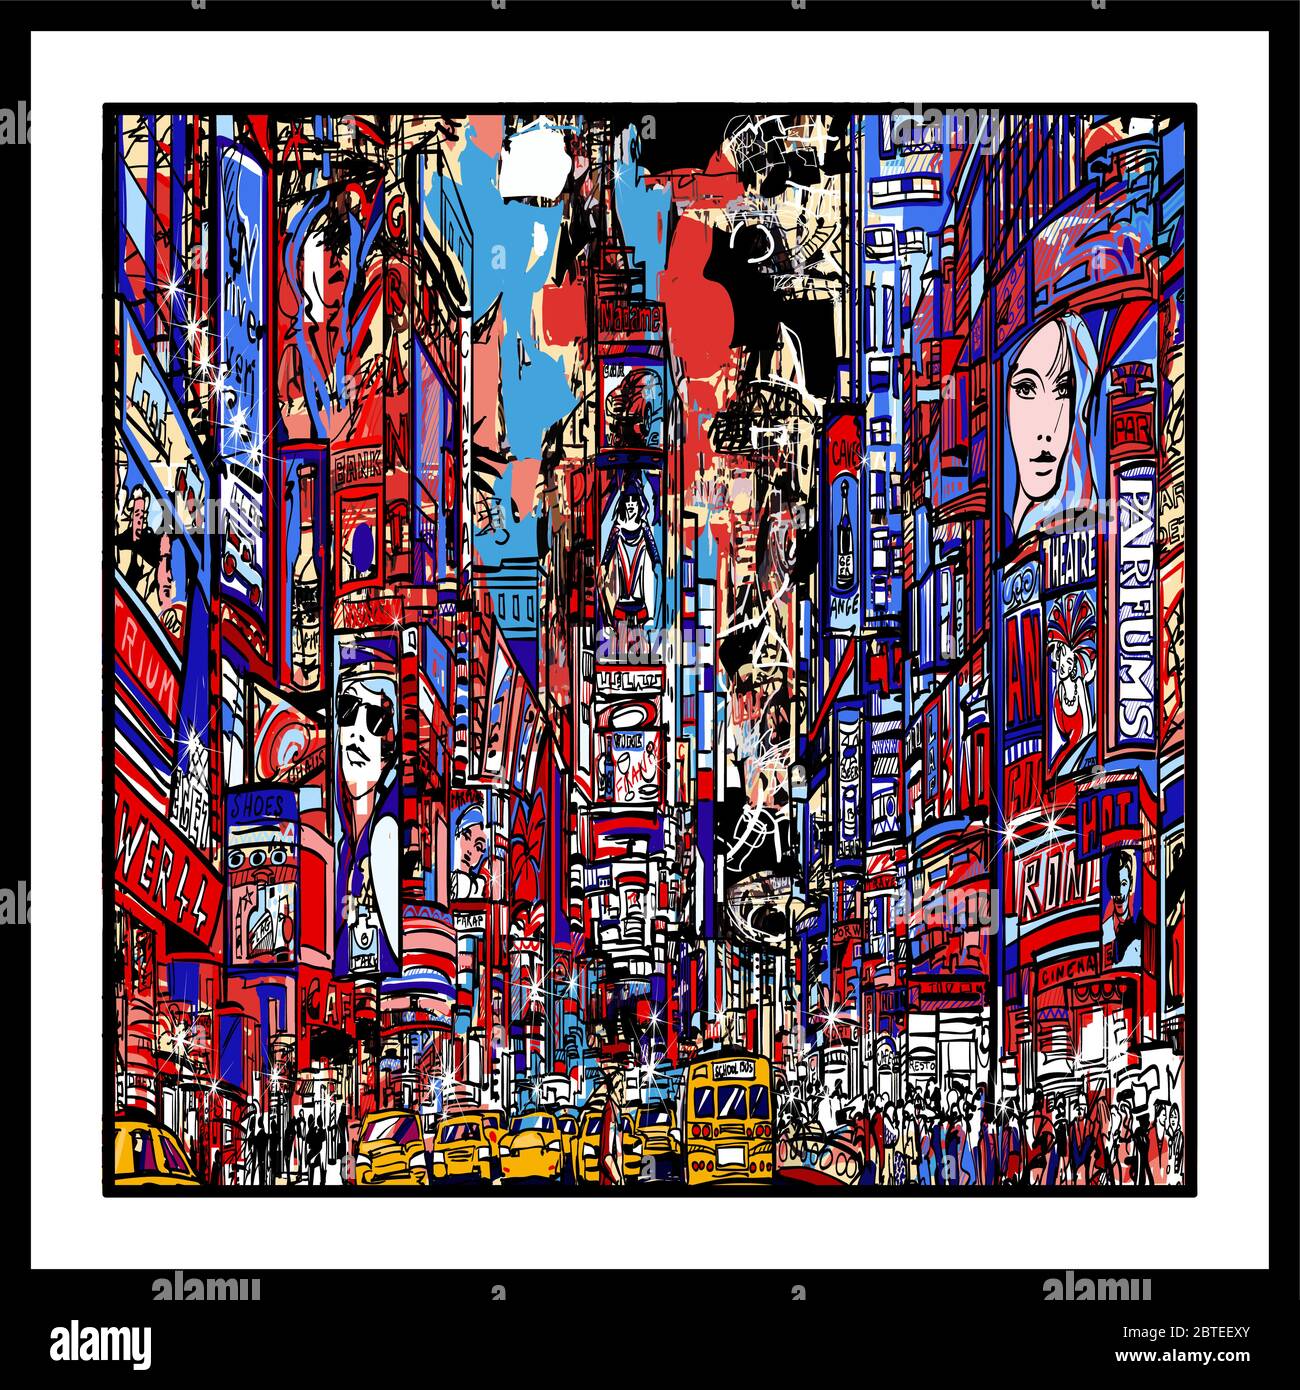 Rappresentazione colorata di Times Square a New york City - illustrazione vettoriale (ideale per la stampa su tessuto o carta, poster o carta da parati, deco della casa Illustrazione Vettoriale